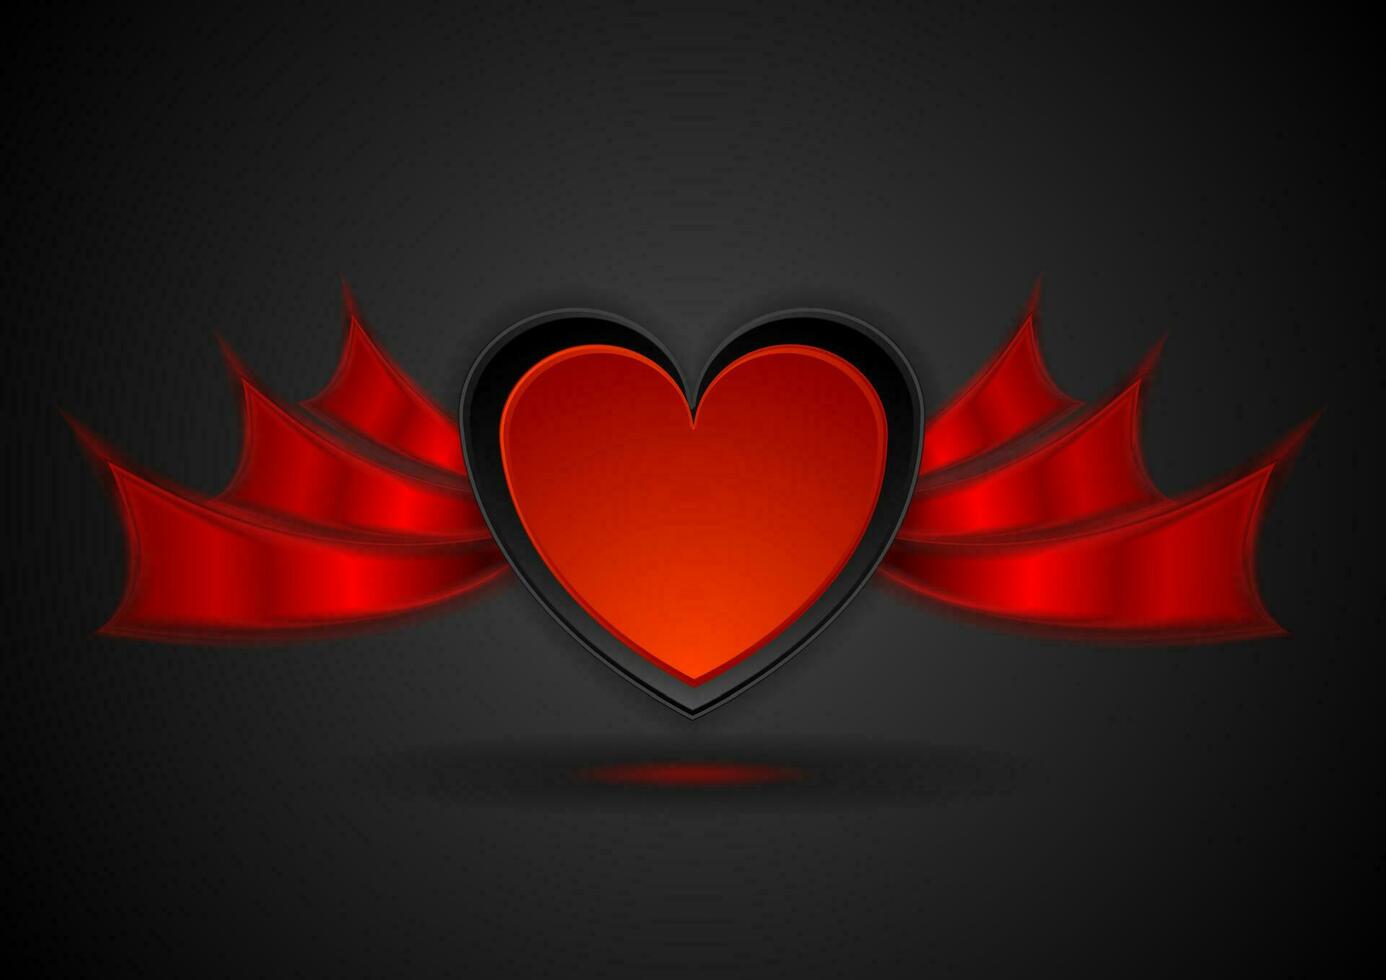 rot Herz mit Flügel abstrakt Liebe Hintergrund vektor